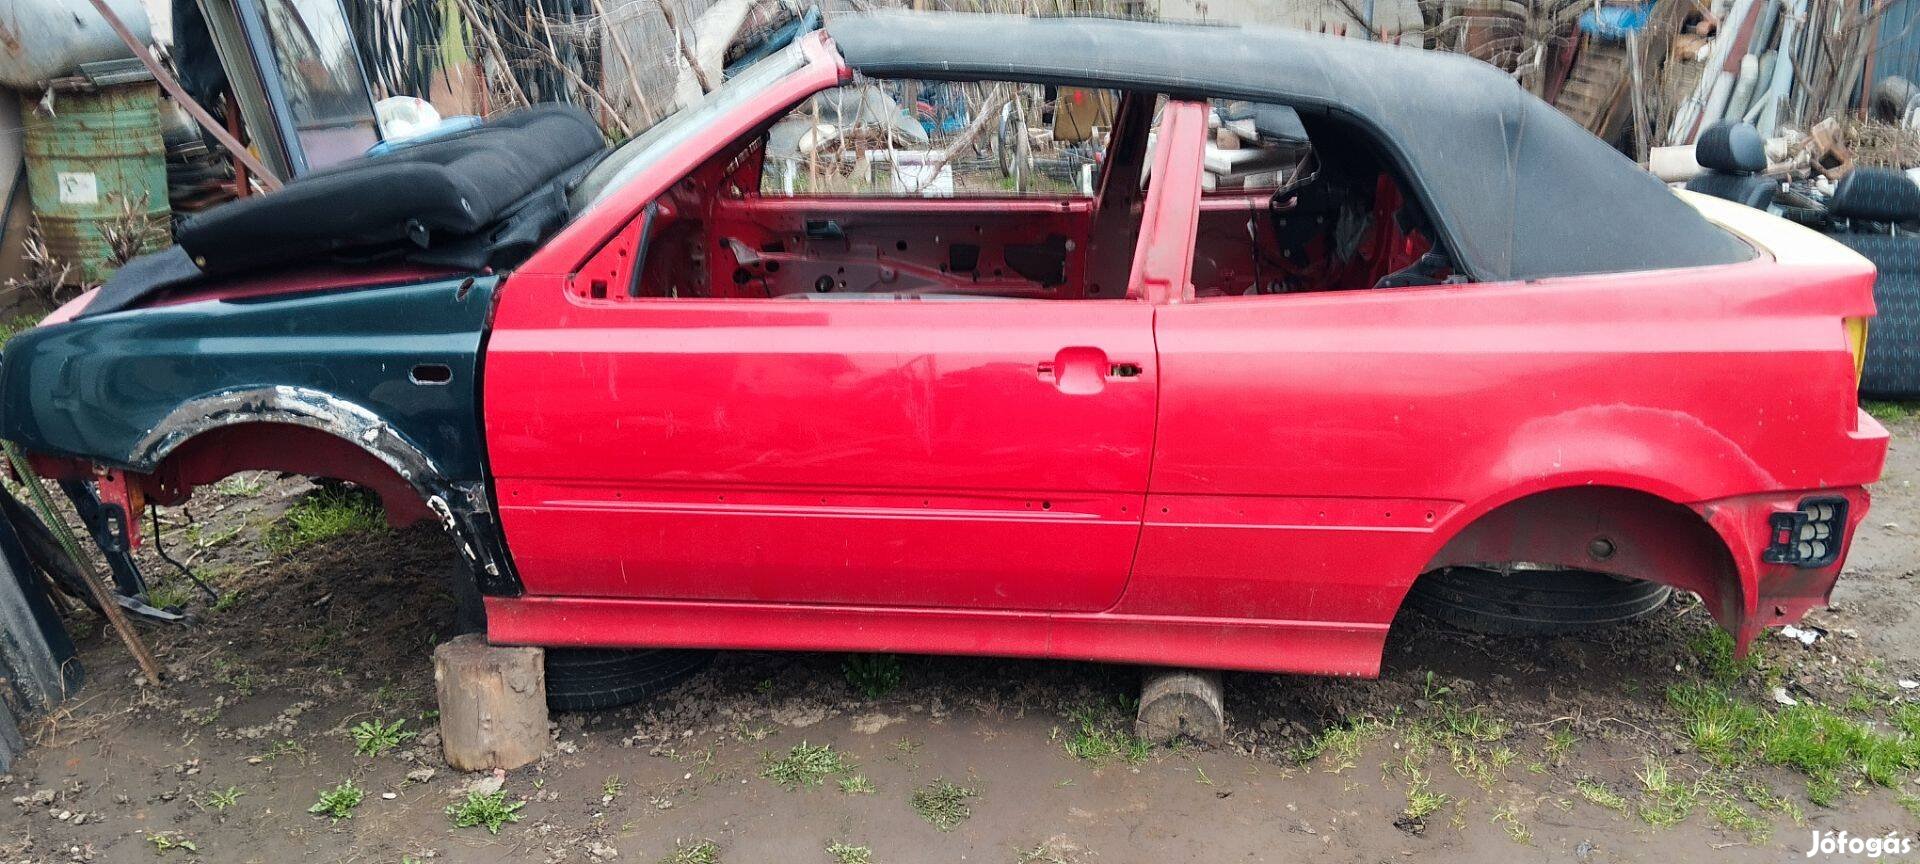 Eladó a képeken látható Golf III piros cabrio. Darabokban is